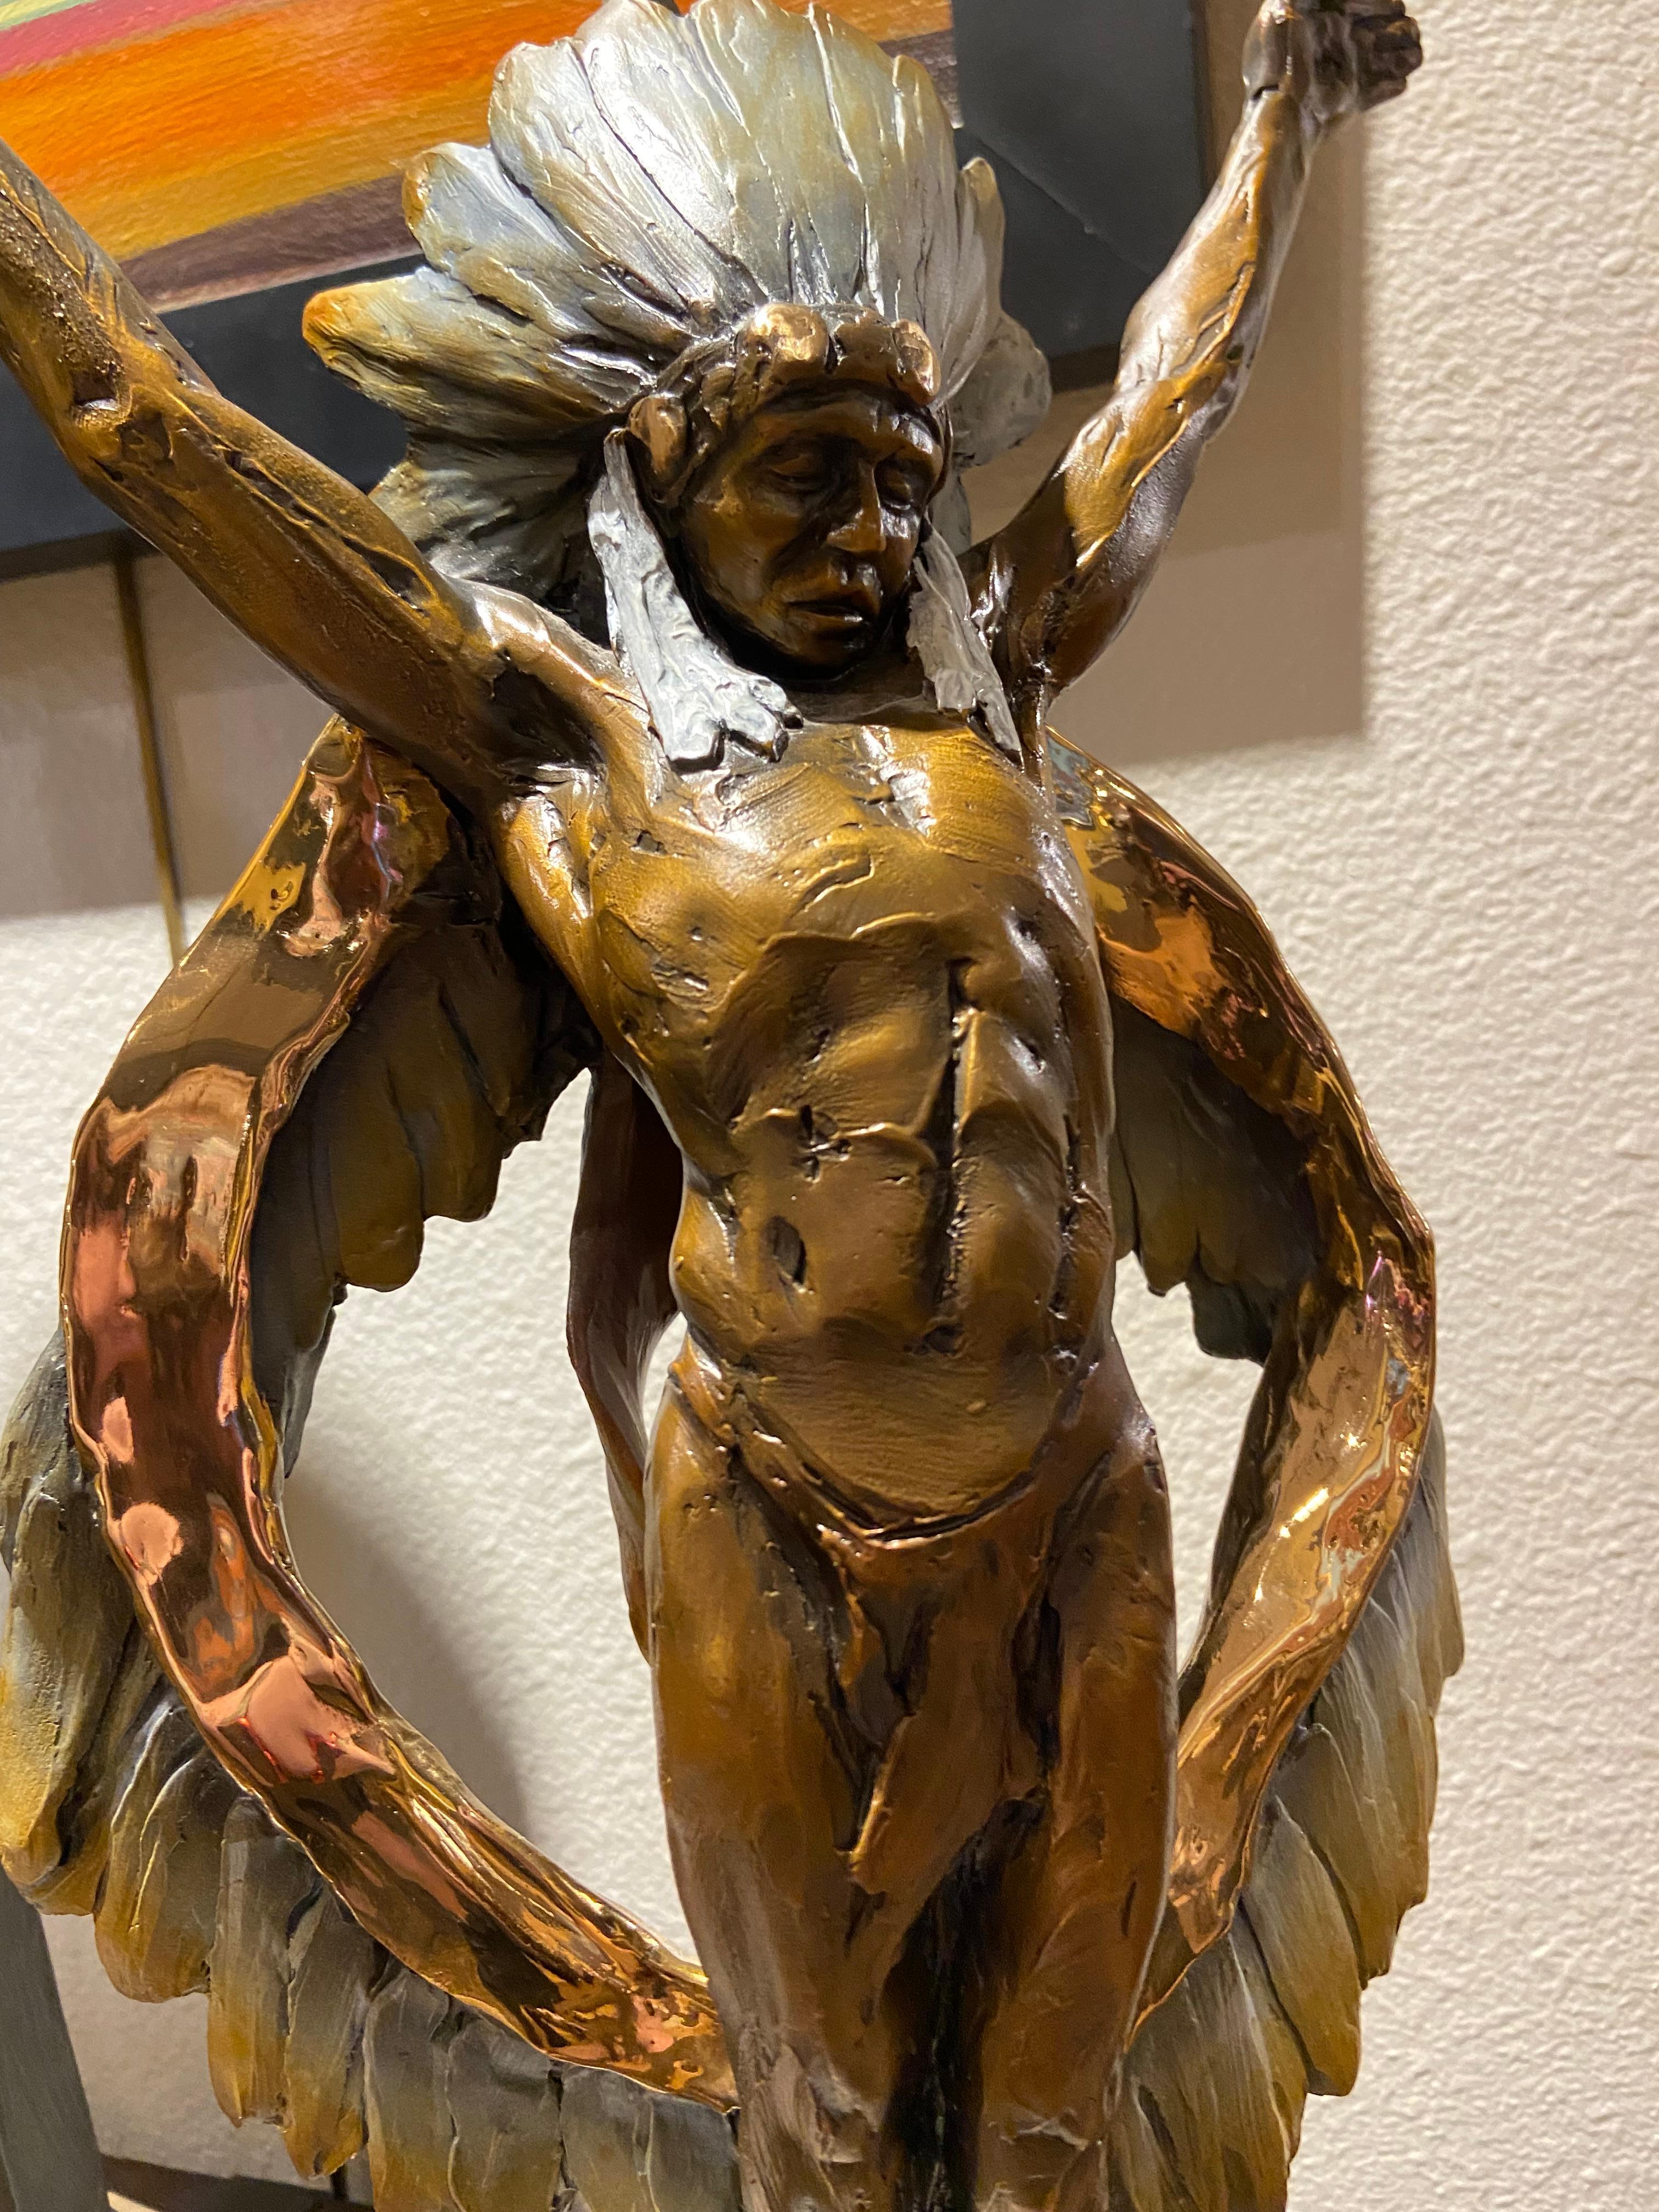 Engagé par Denny Haskew
Bronze figuratif sur socle en grès Édition limitée à 35 exemplaires
20h 8.5w 7d inches #15 pictured

